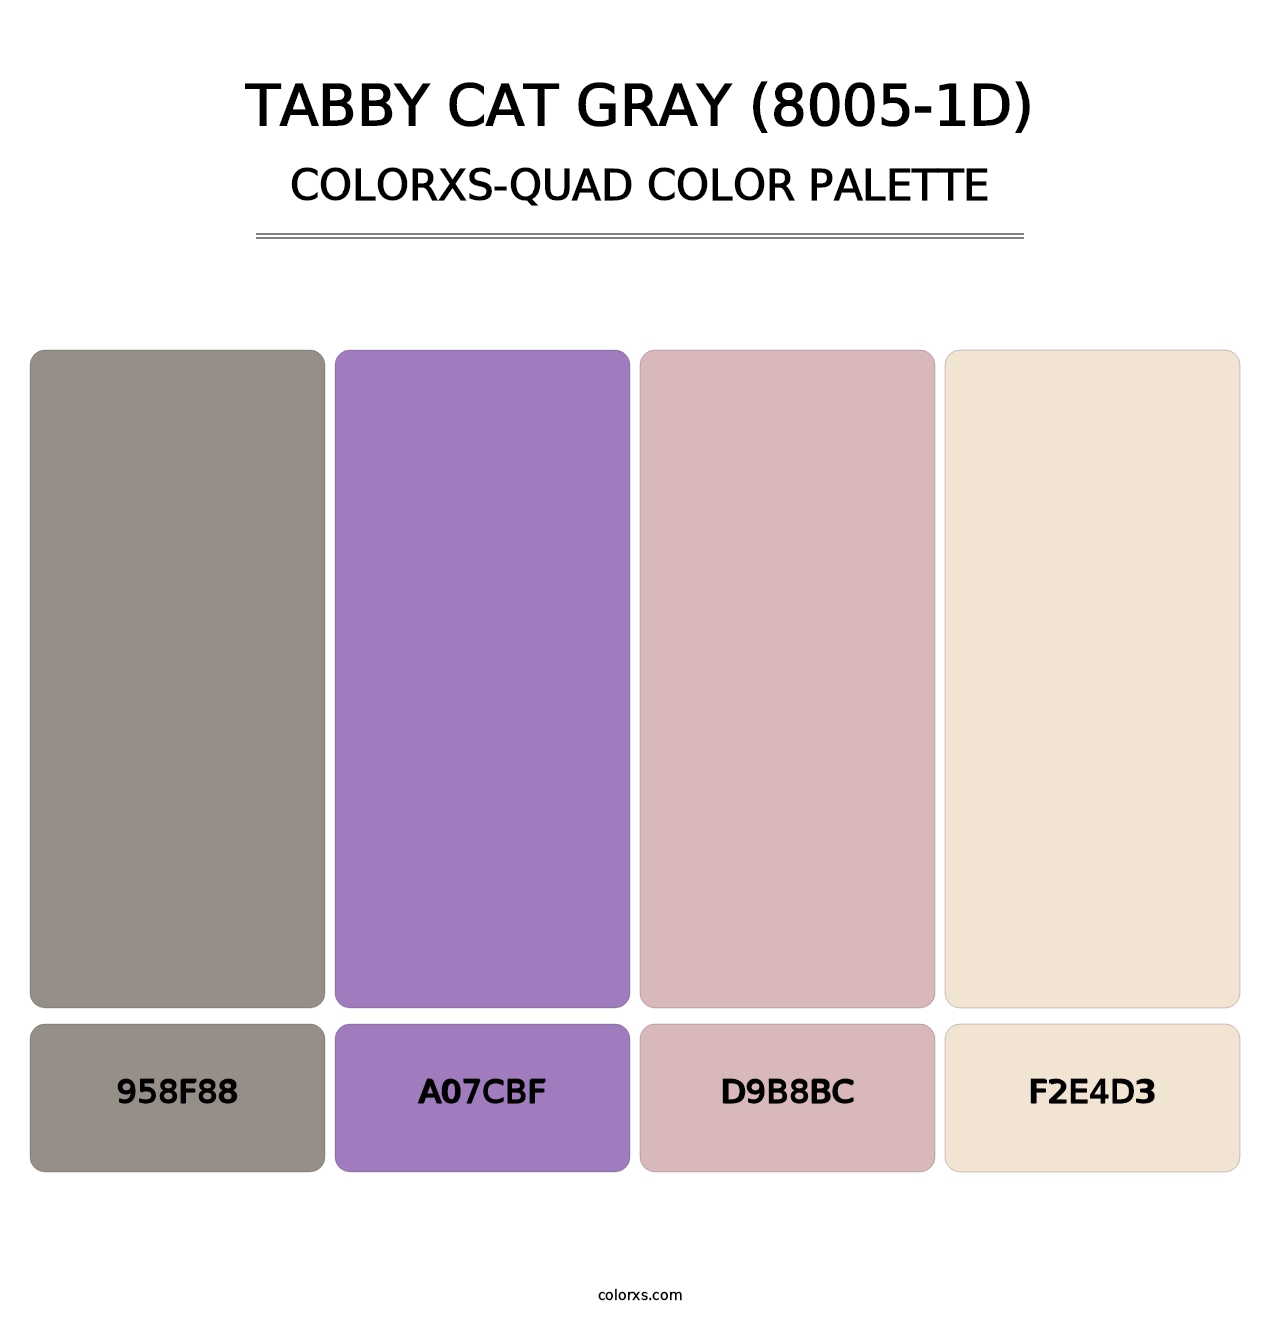 Tabby Cat Gray (8005-1D) - Colorxs Quad Palette